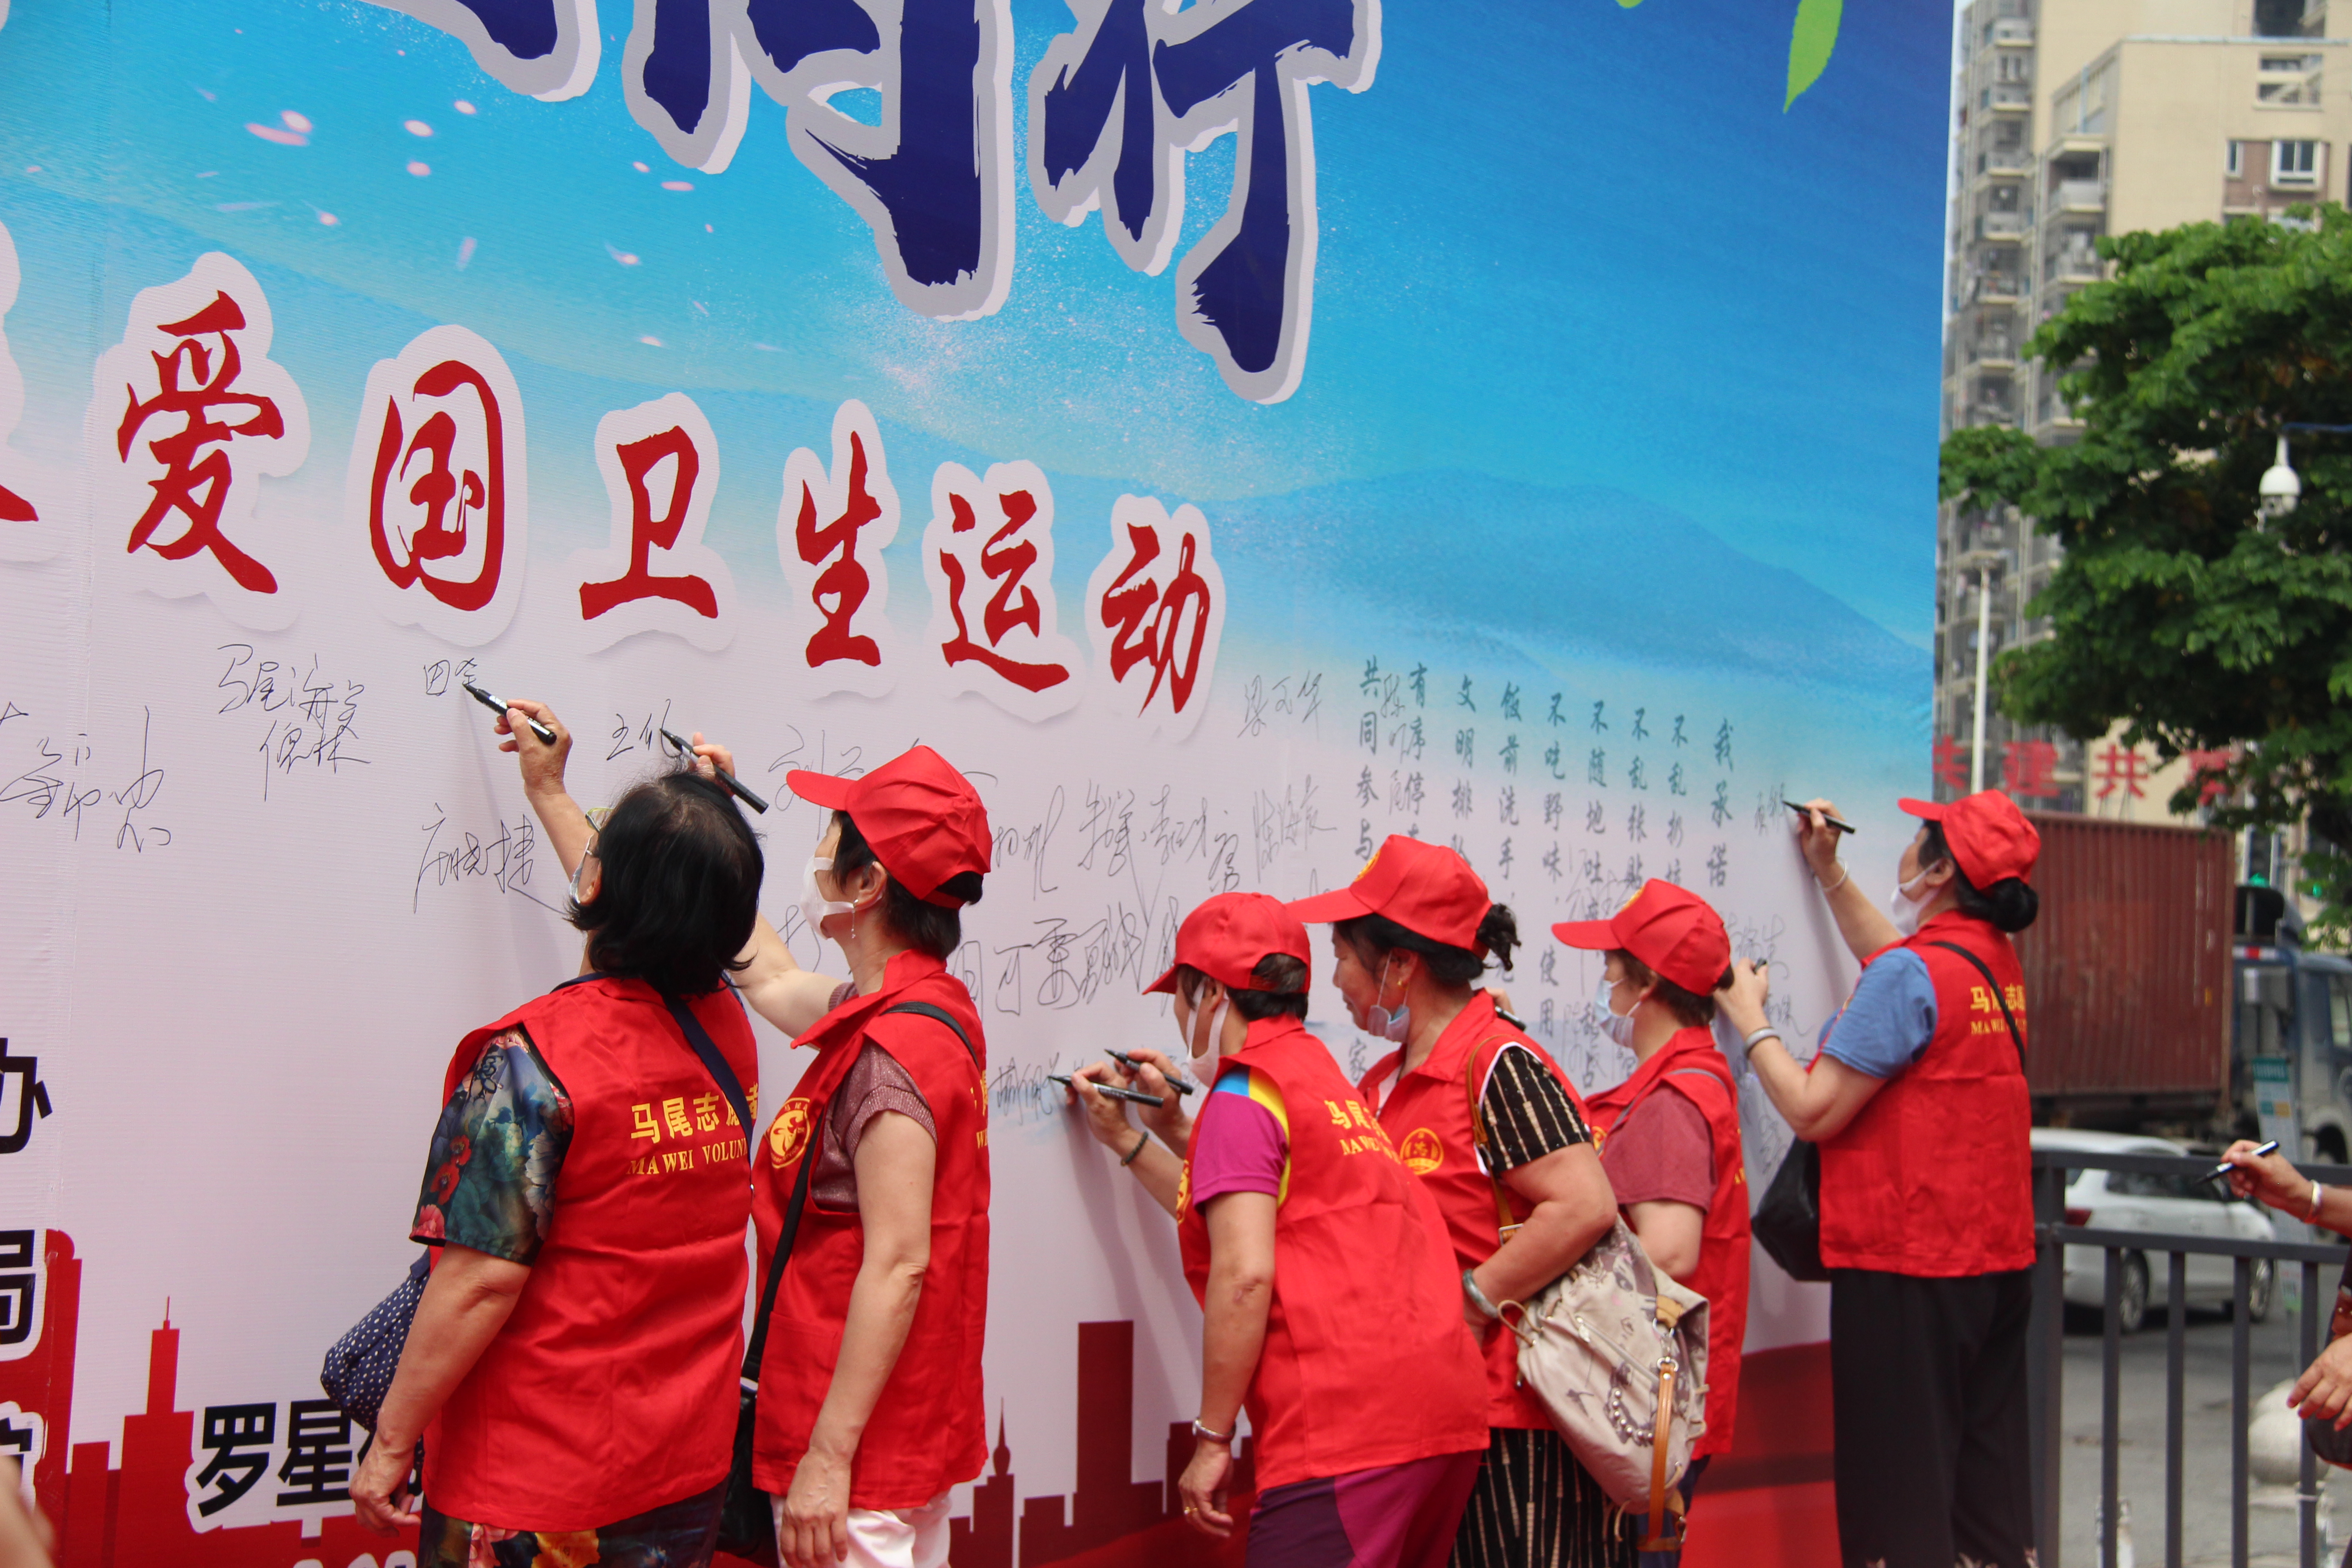 世卫组织誉为“中国的国宝”的活动在马尾开展得有声有色